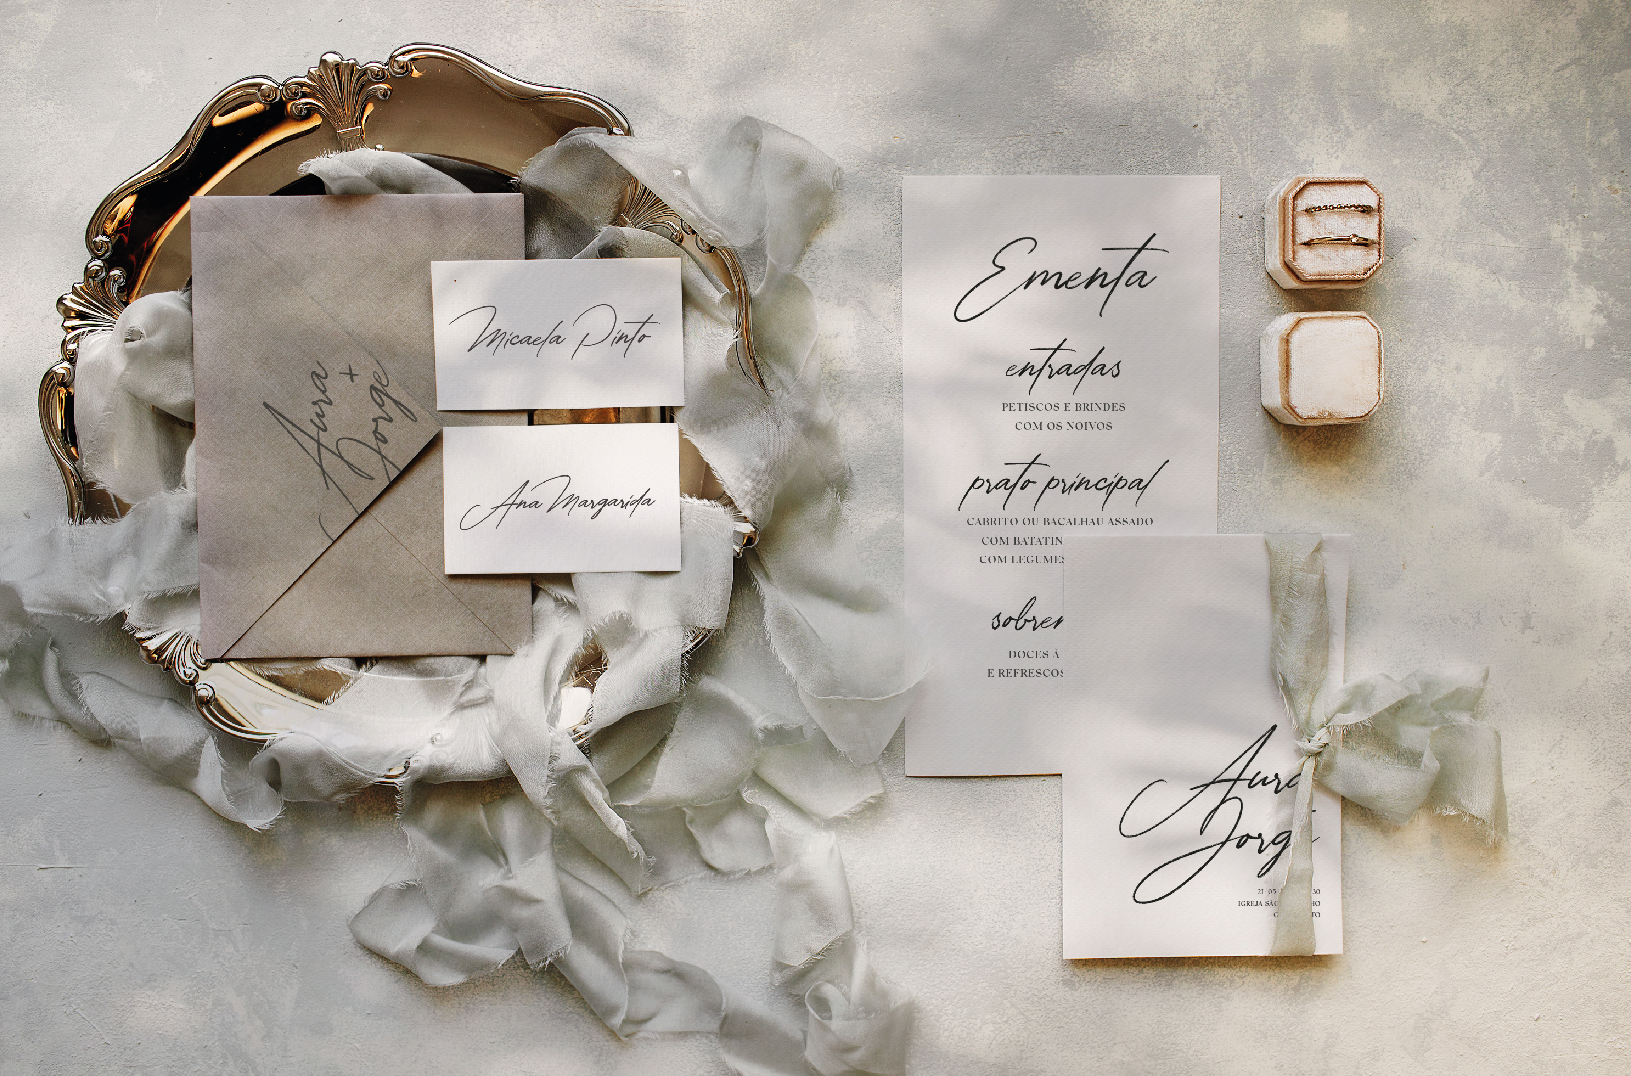 Ementa, marcador de lugar e convite de casamento de estilo tipográfico com um laço de linho bege, com um envelope cinza pousado numa bandeja dourada